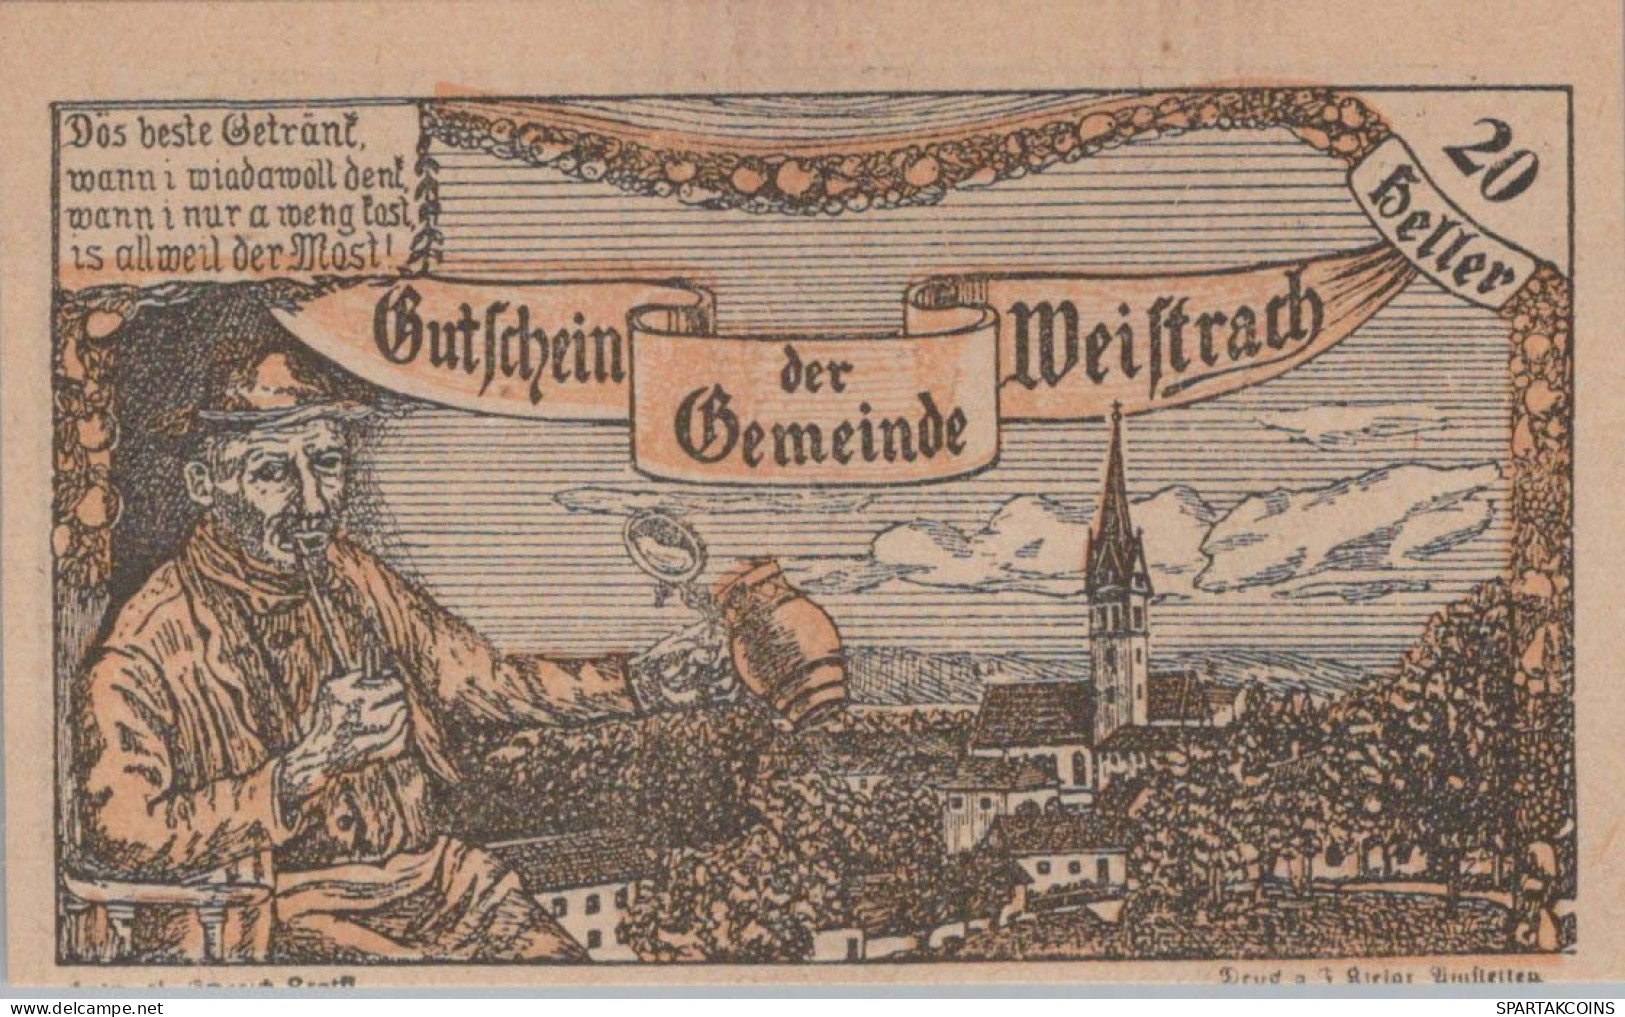 20 HELLER 1920 Stadt WEISTRACH Niedrigeren Österreich Notgeld Papiergeld Banknote #PG797 - Lokale Ausgaben